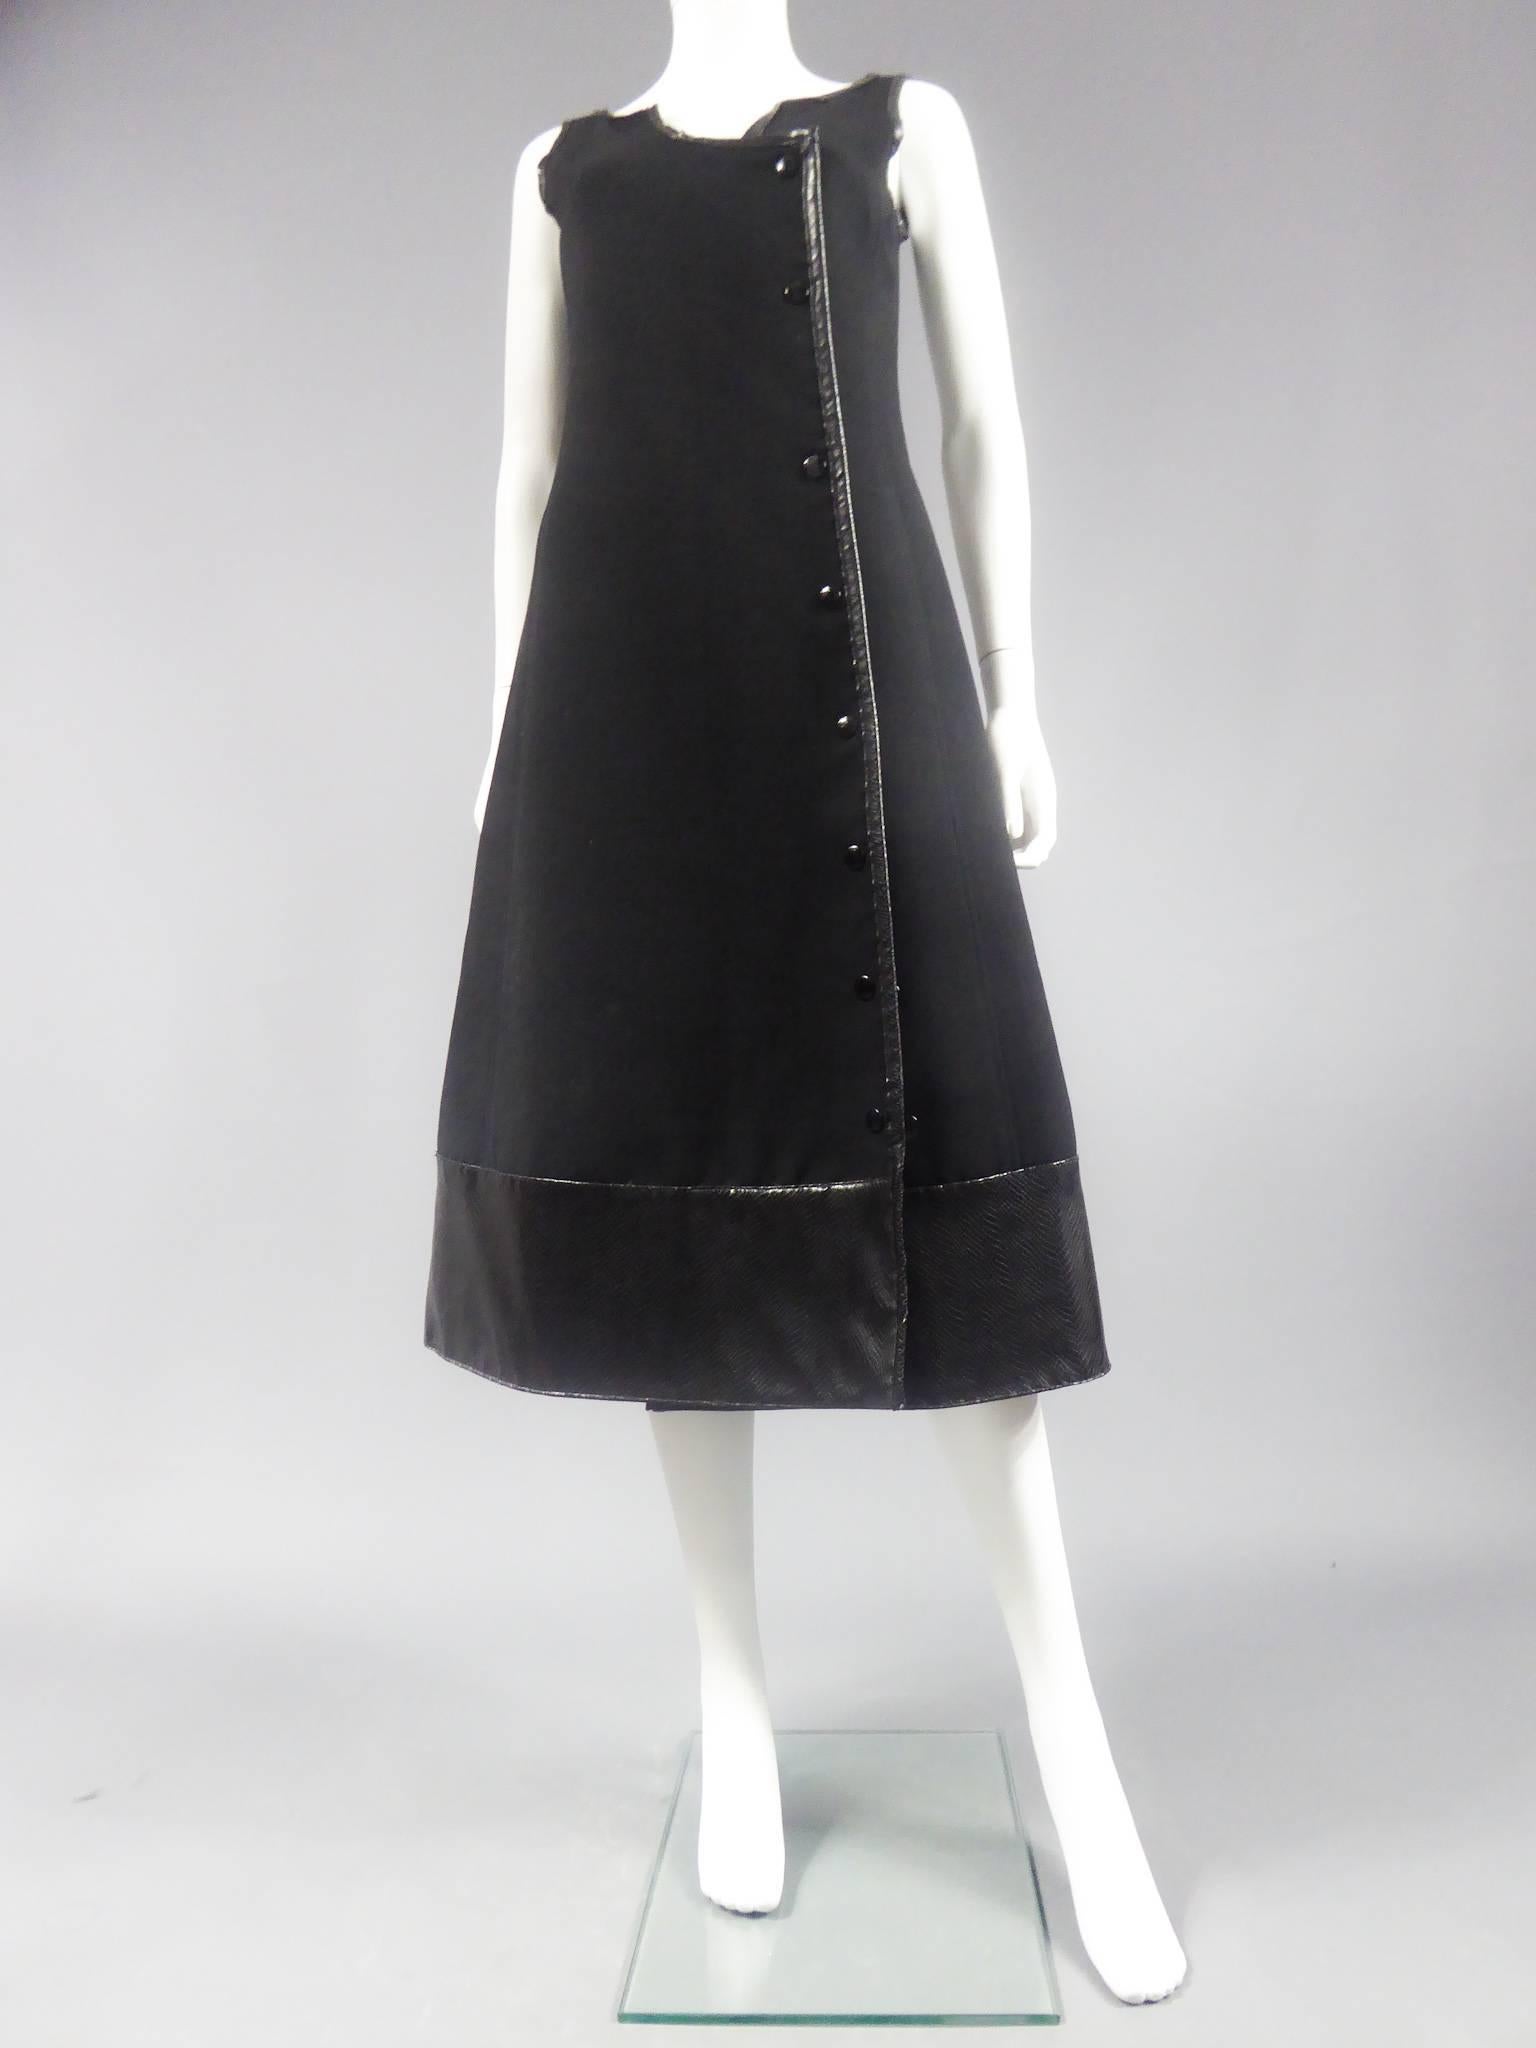 Um 1970

Frankreich

Nummer 55540 Haute Couture Wickelkleid aus dickem schwarzem Jersey mit Nähten und Paspeln. Wird mit schwarzen Druckknöpfen auf der Vorderseite befestigt, drei davon sind verdoppelt, um die Ausbuchtung des unteren Teils des Rocks